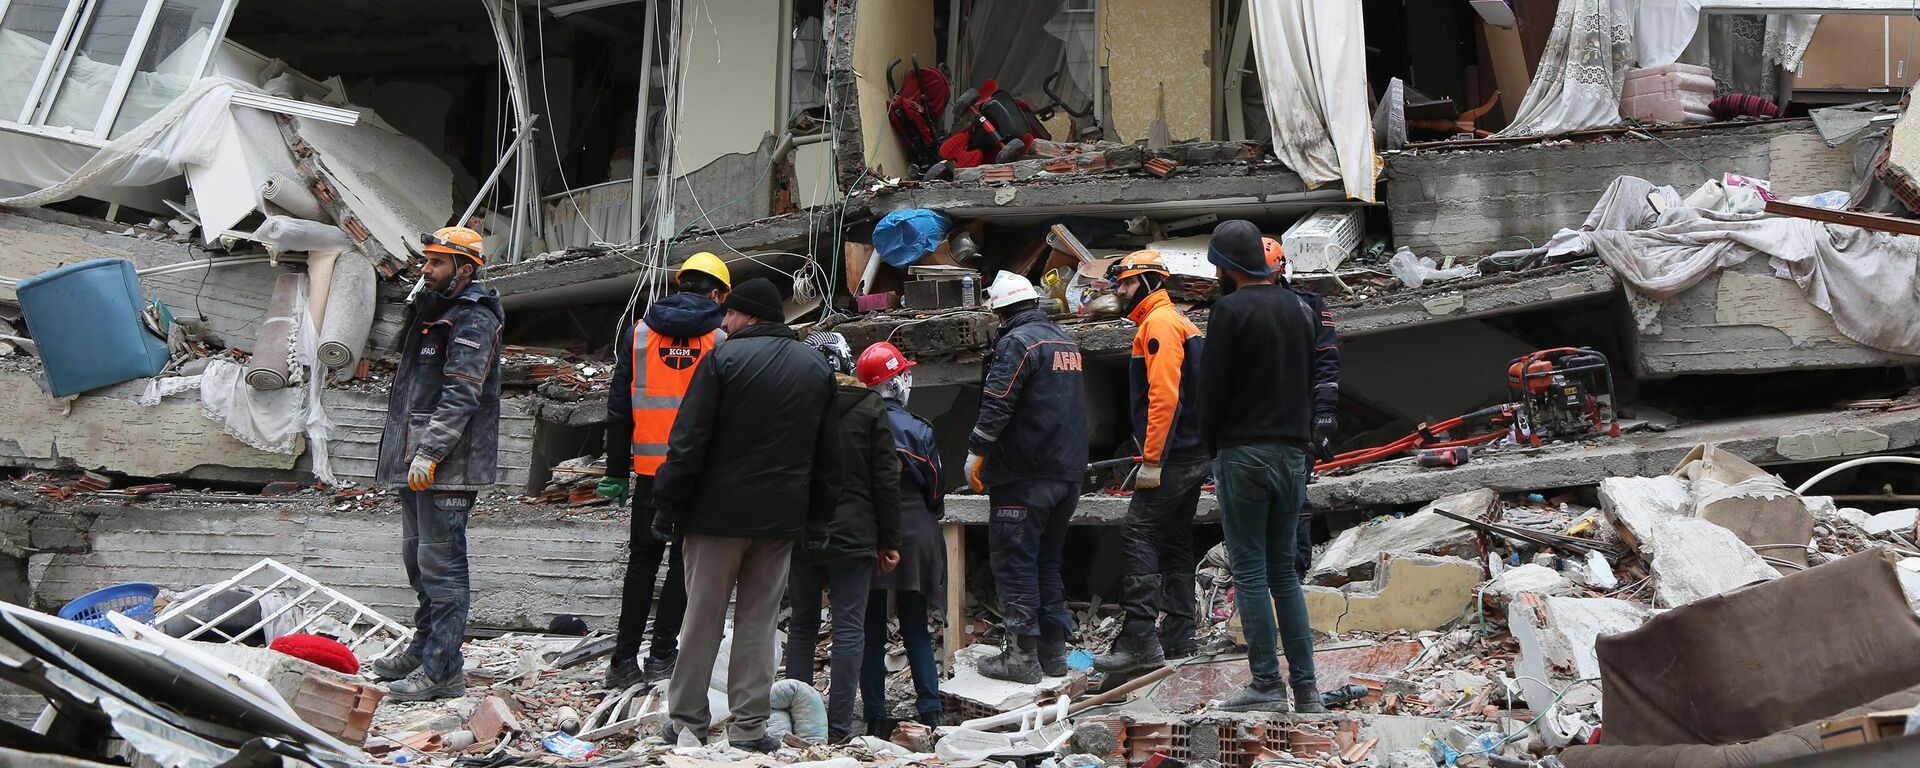 Consequências do terremoto na cidade turca de Diyarbakir. O tremor devastador de magnitude 7,7 ocorreu em 5 de fevereiro de 2023 - Sputnik Brasil, 1920, 06.02.2023